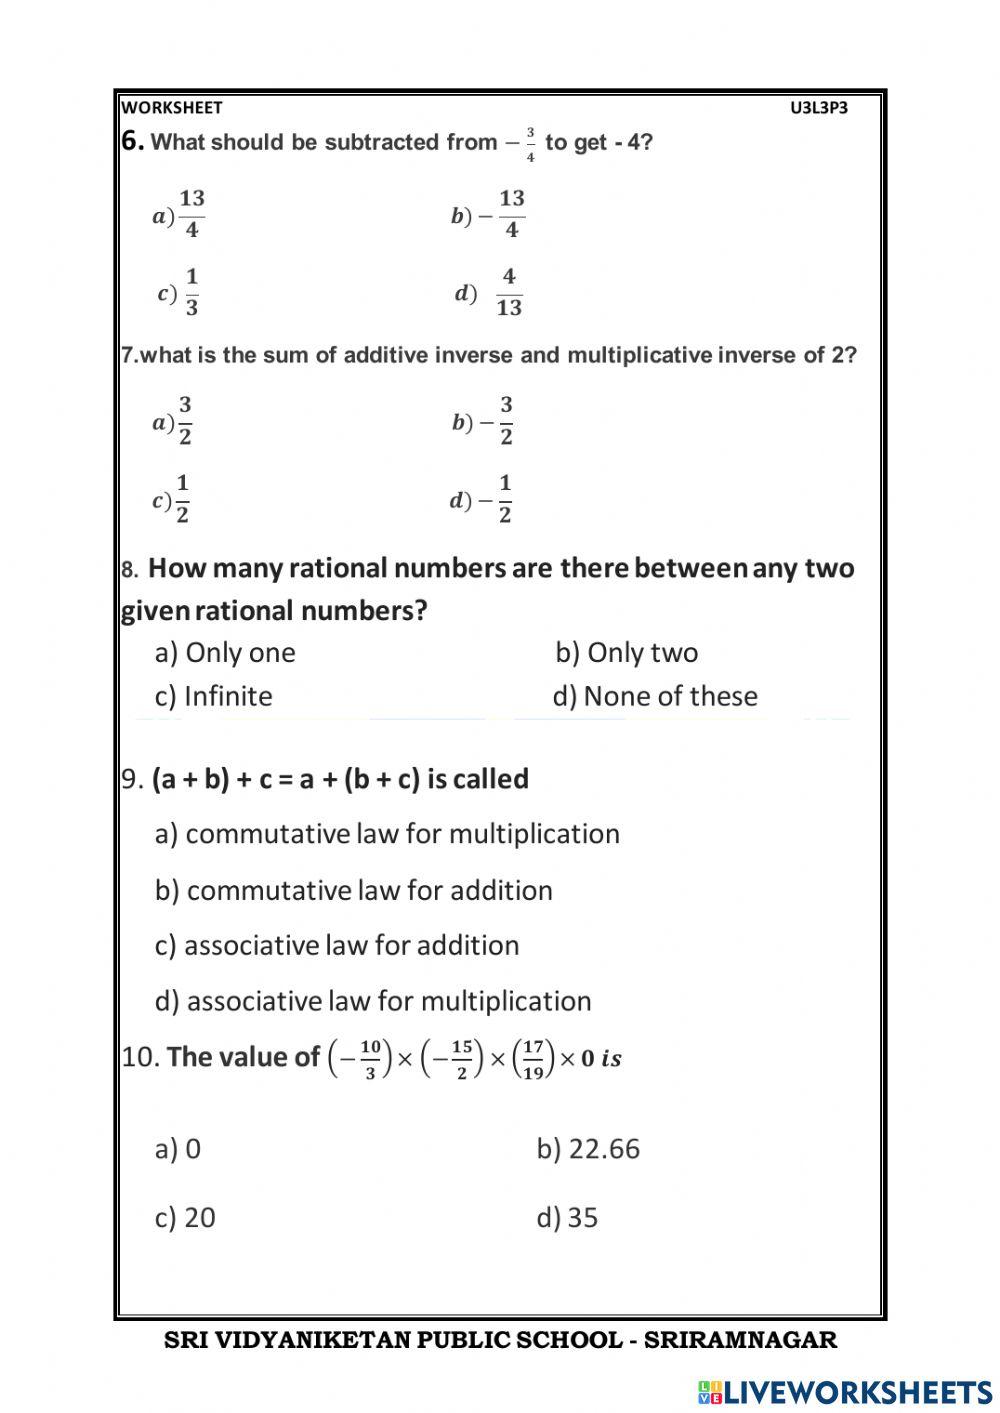 Rational number live worksheet